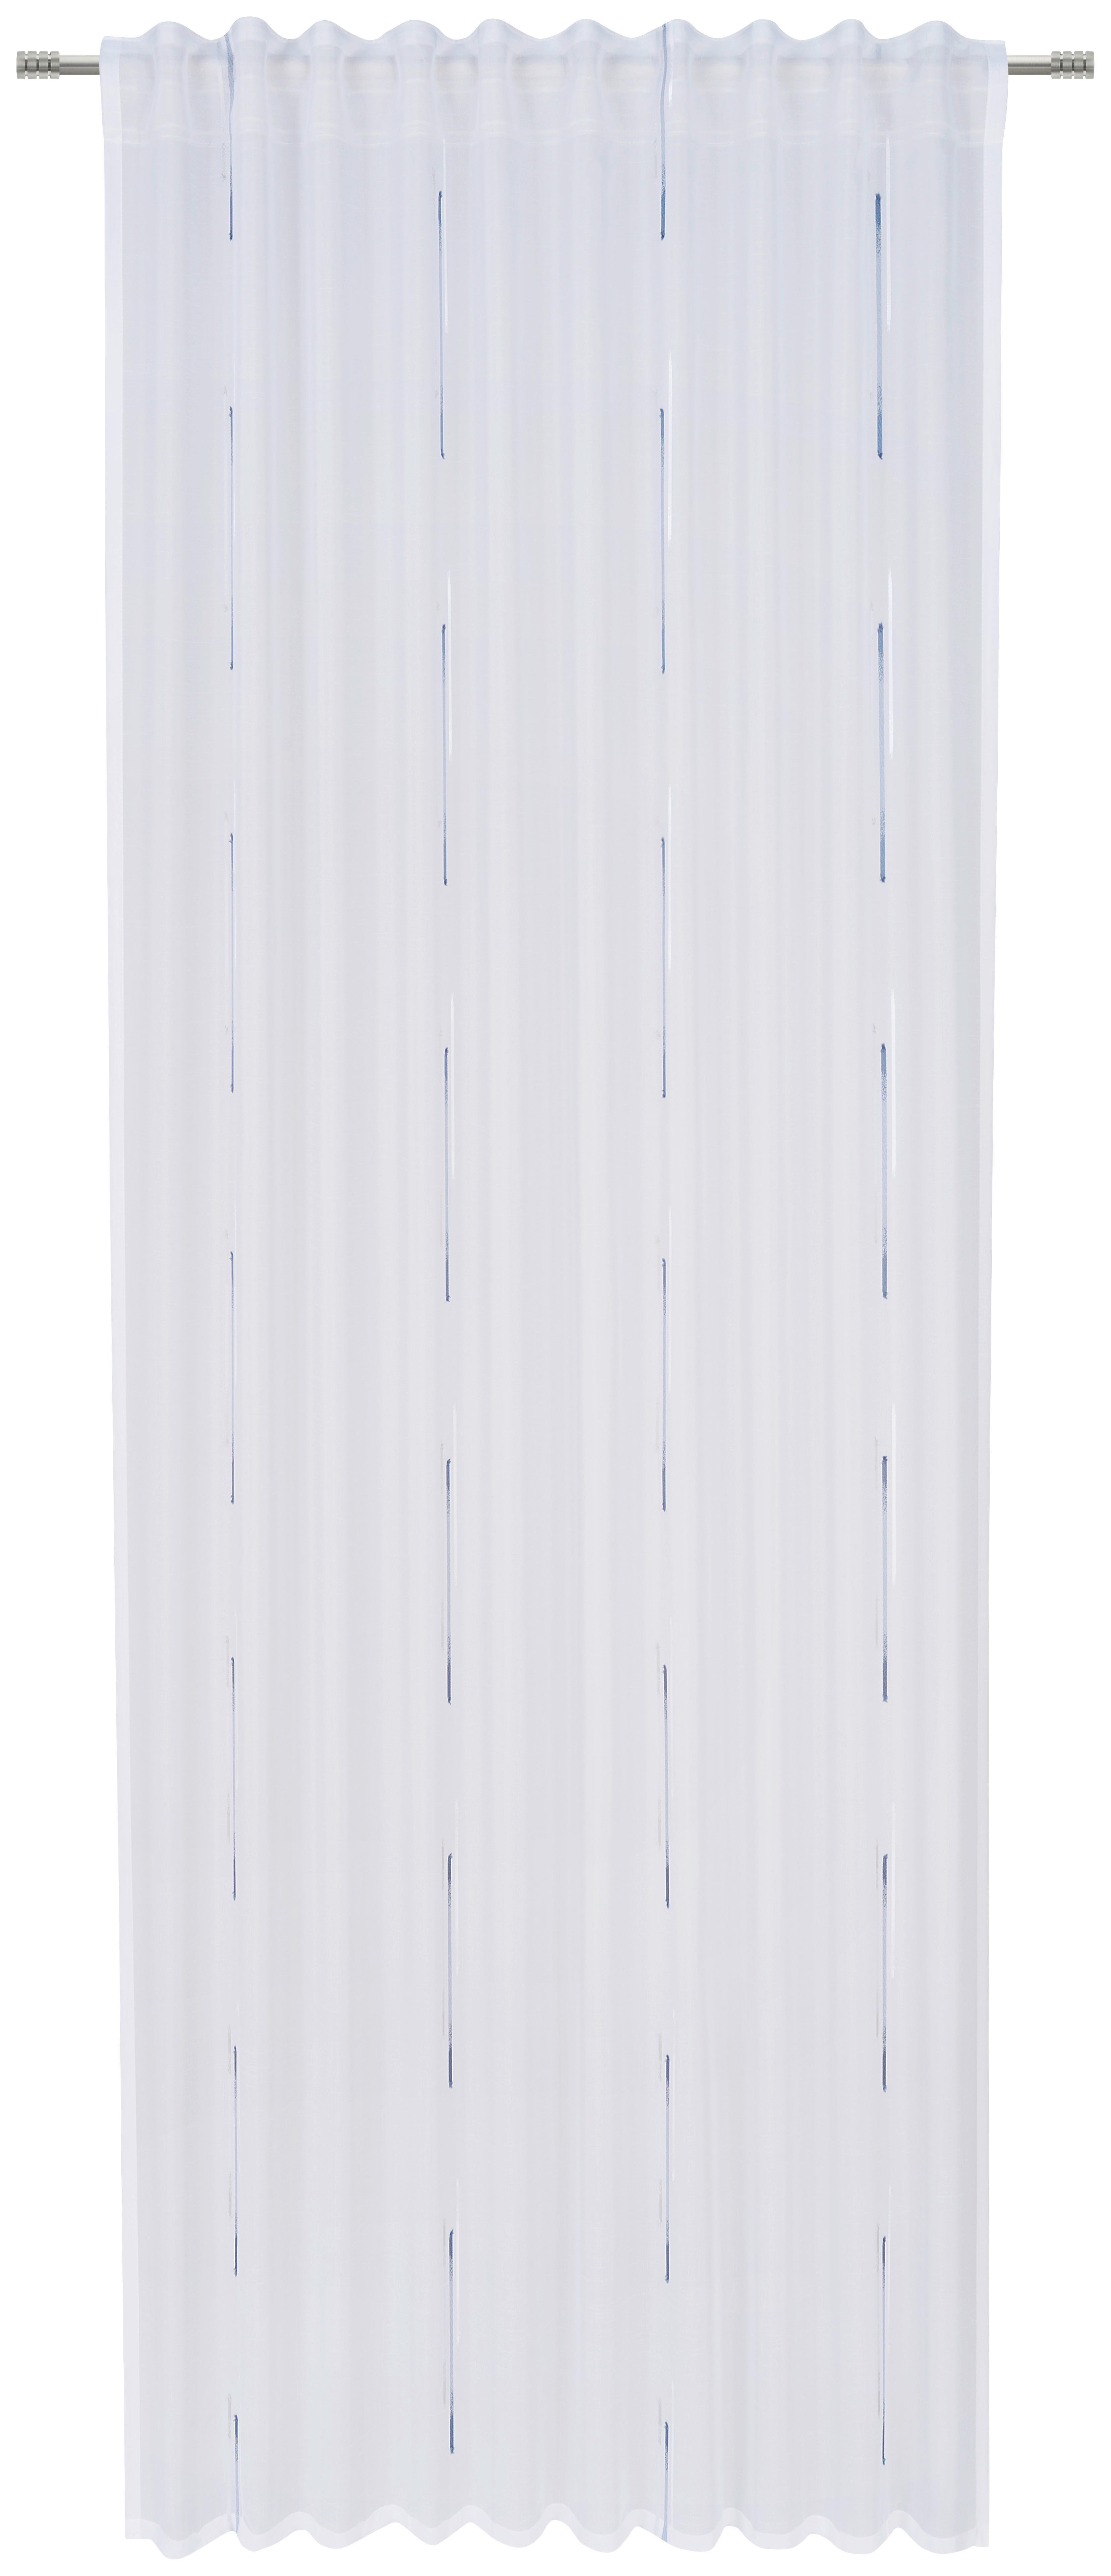 GOTOVA ZAVESA plava - plava, Osnovno, tekstil (135/245cm) - Esposa